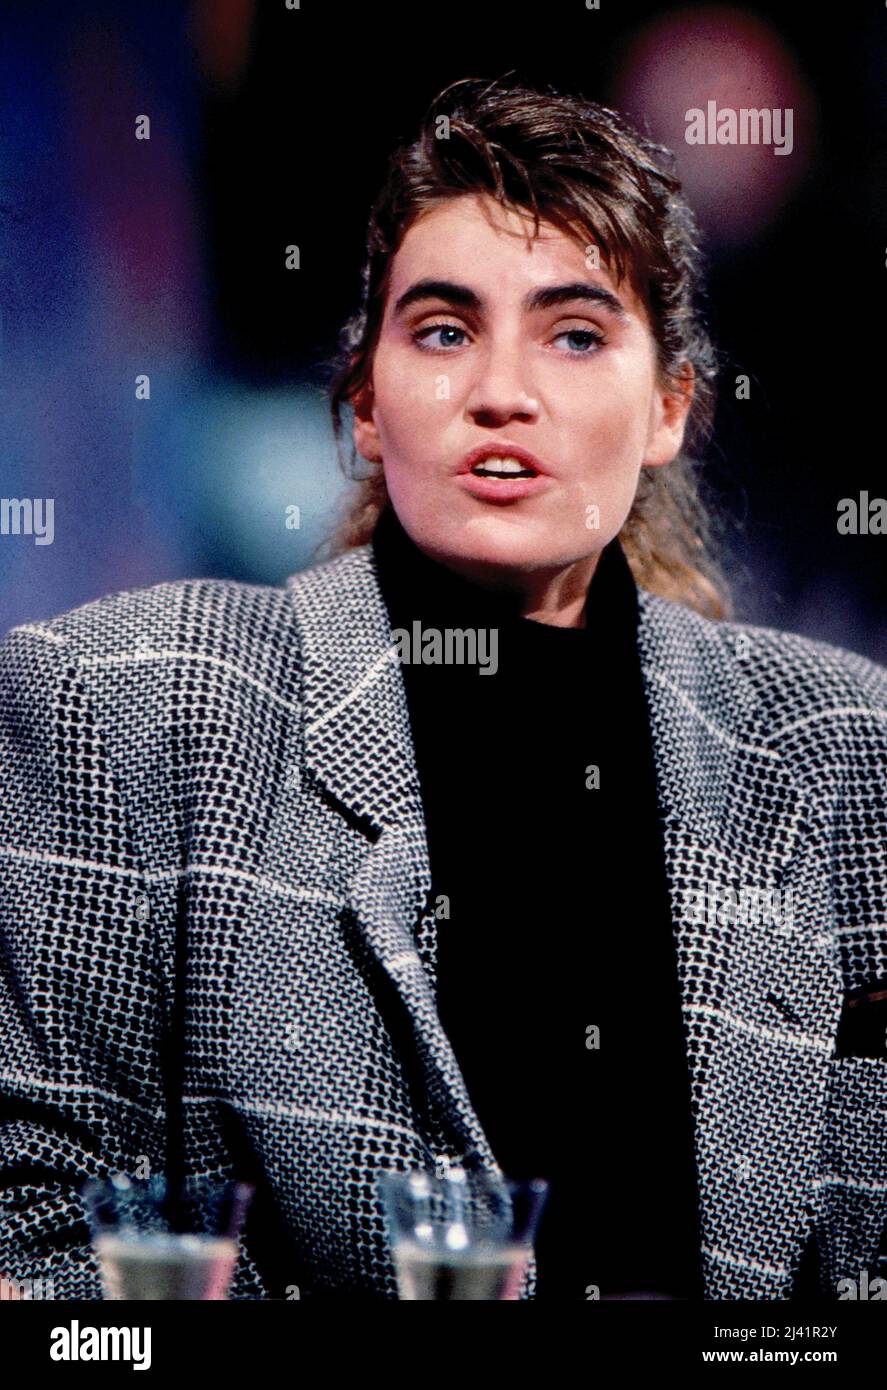 Nicole Meissner, ex-Model und Geliebte von Box-Promoter Ebby Thust, in einer Talkshow, Deutschland um 1995. Foto Stock